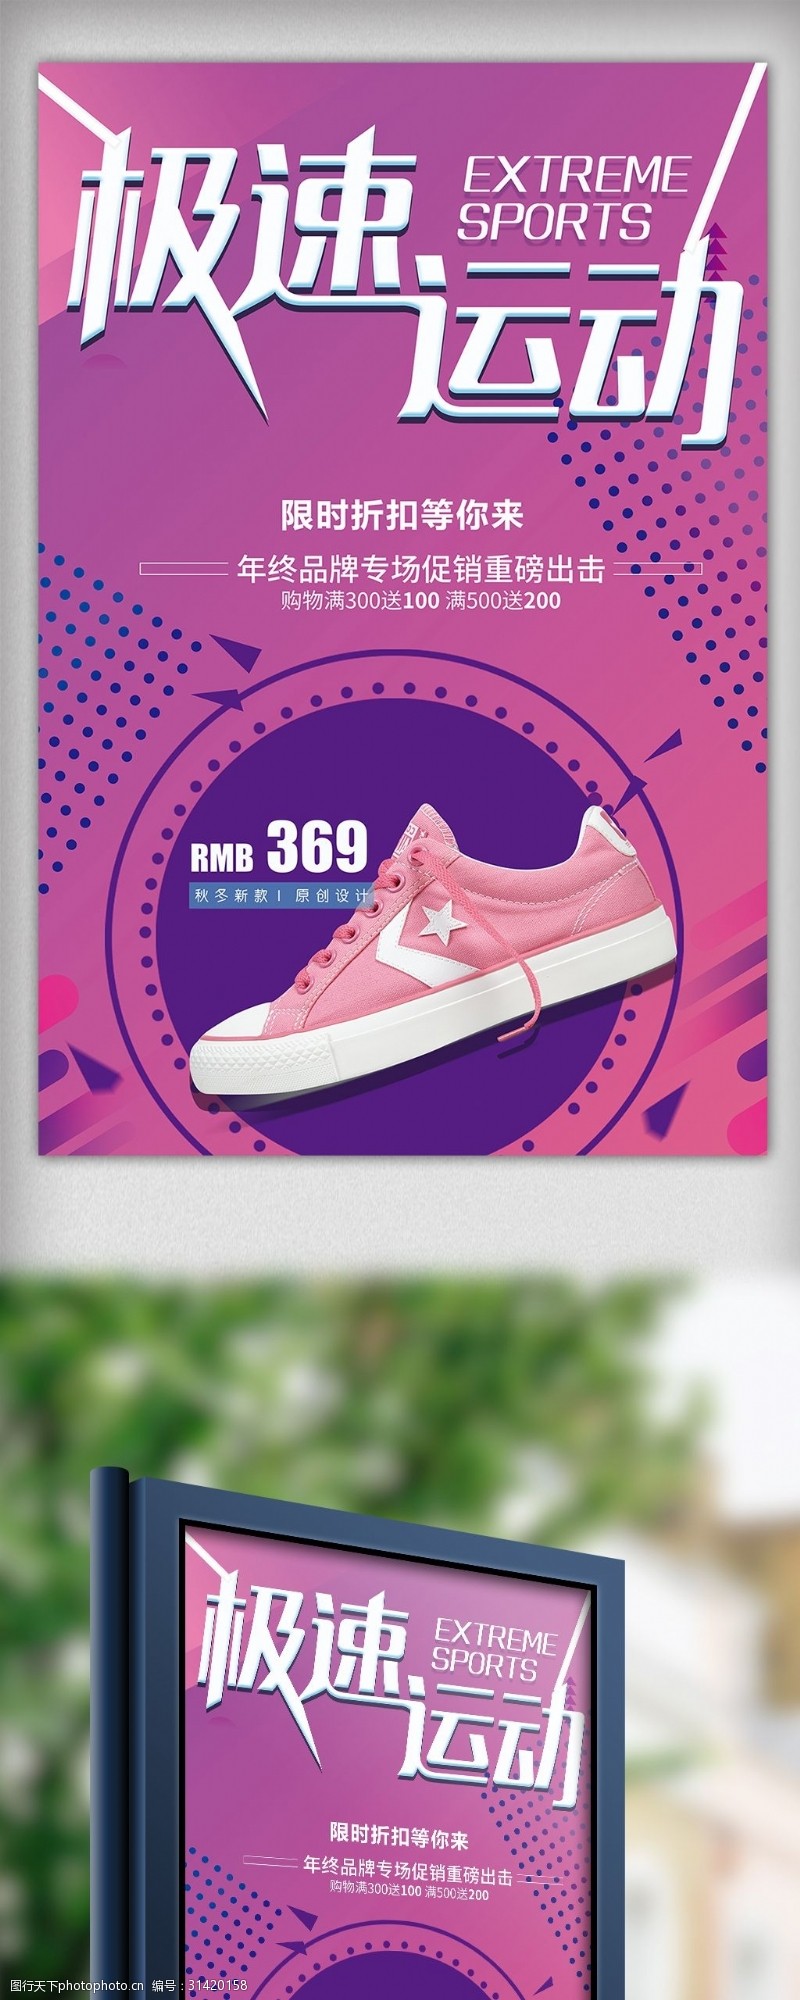 nike极限运动运动鞋促销宣传海报模板